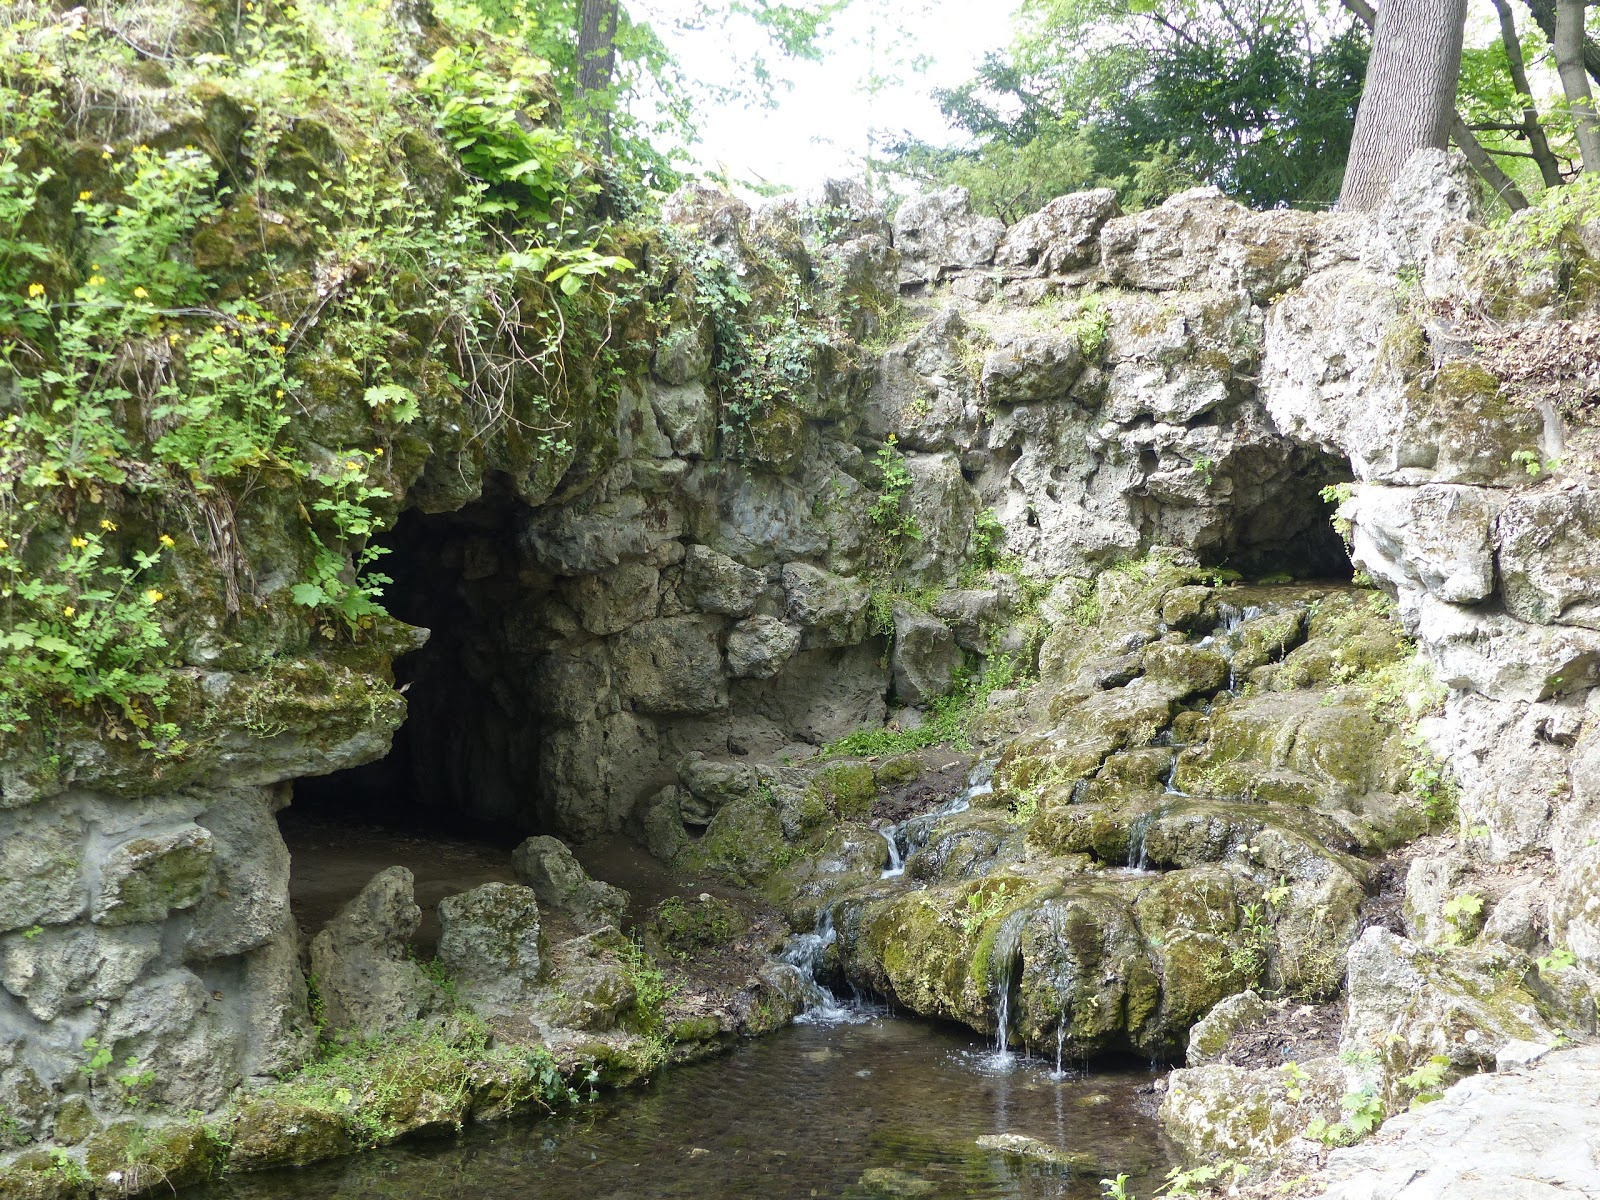 Tata, Angol Park, műbarlang (grotta), SzG3